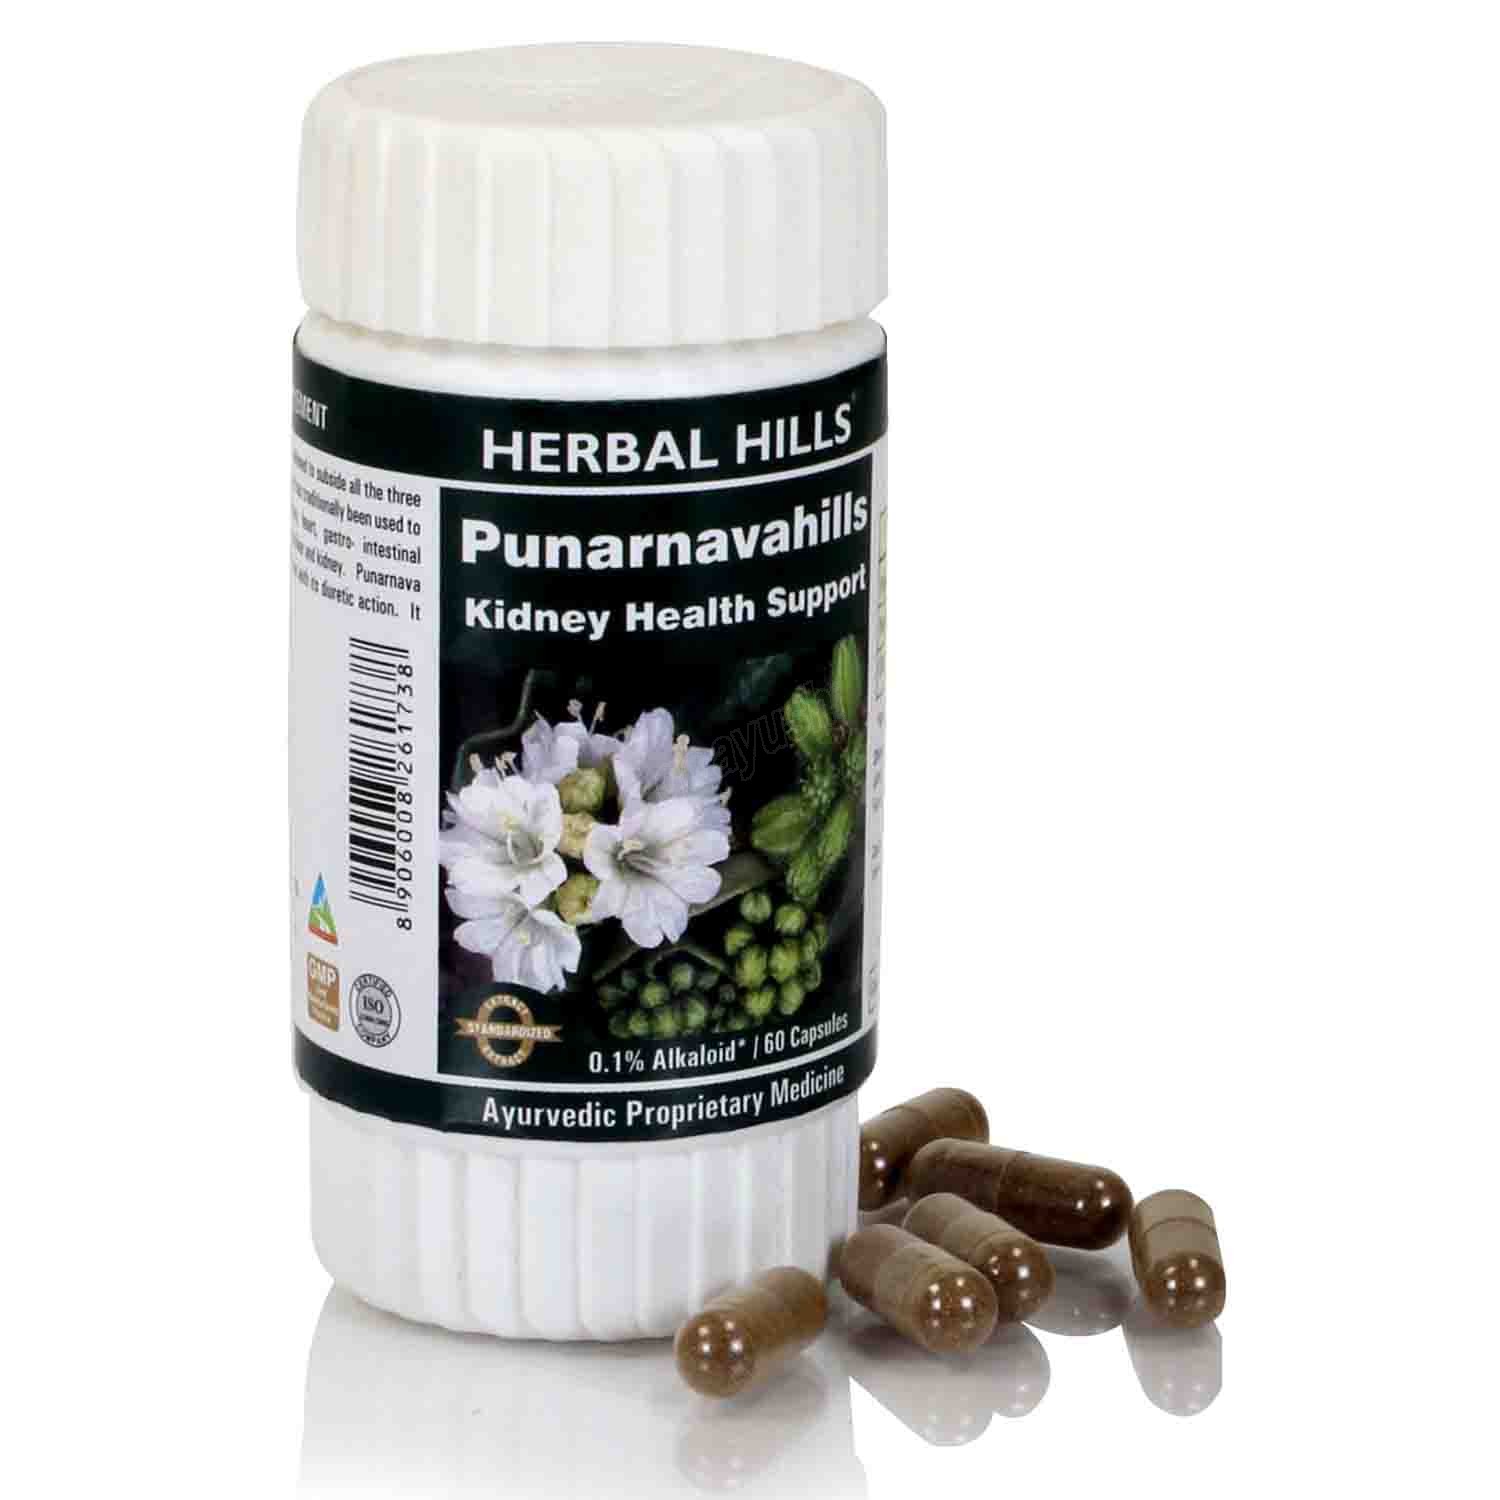 Buy Herbal Hills Punarnavahills Capsule at Best Price Online